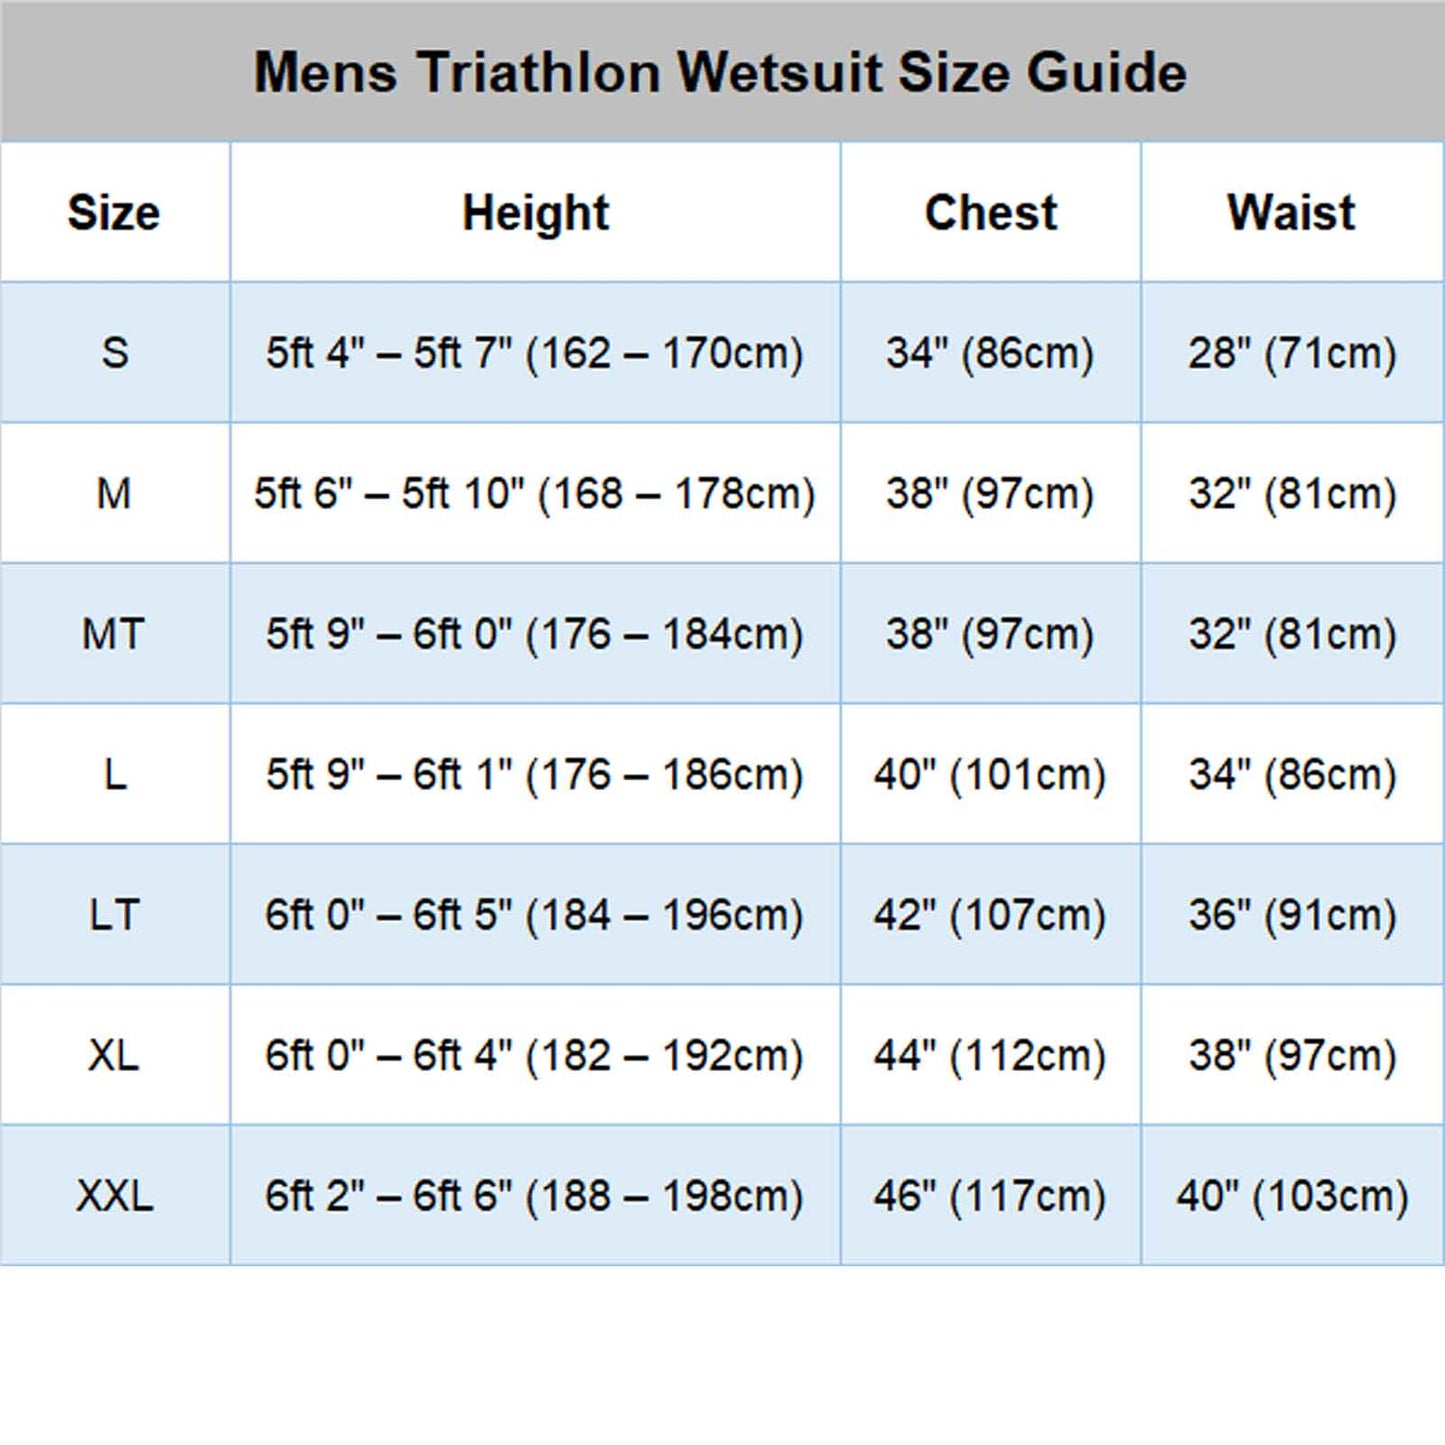 H2O PRO Mens 3/2mm Flatlock + GBS Open Water / Triathlon Swimming Wetsuit